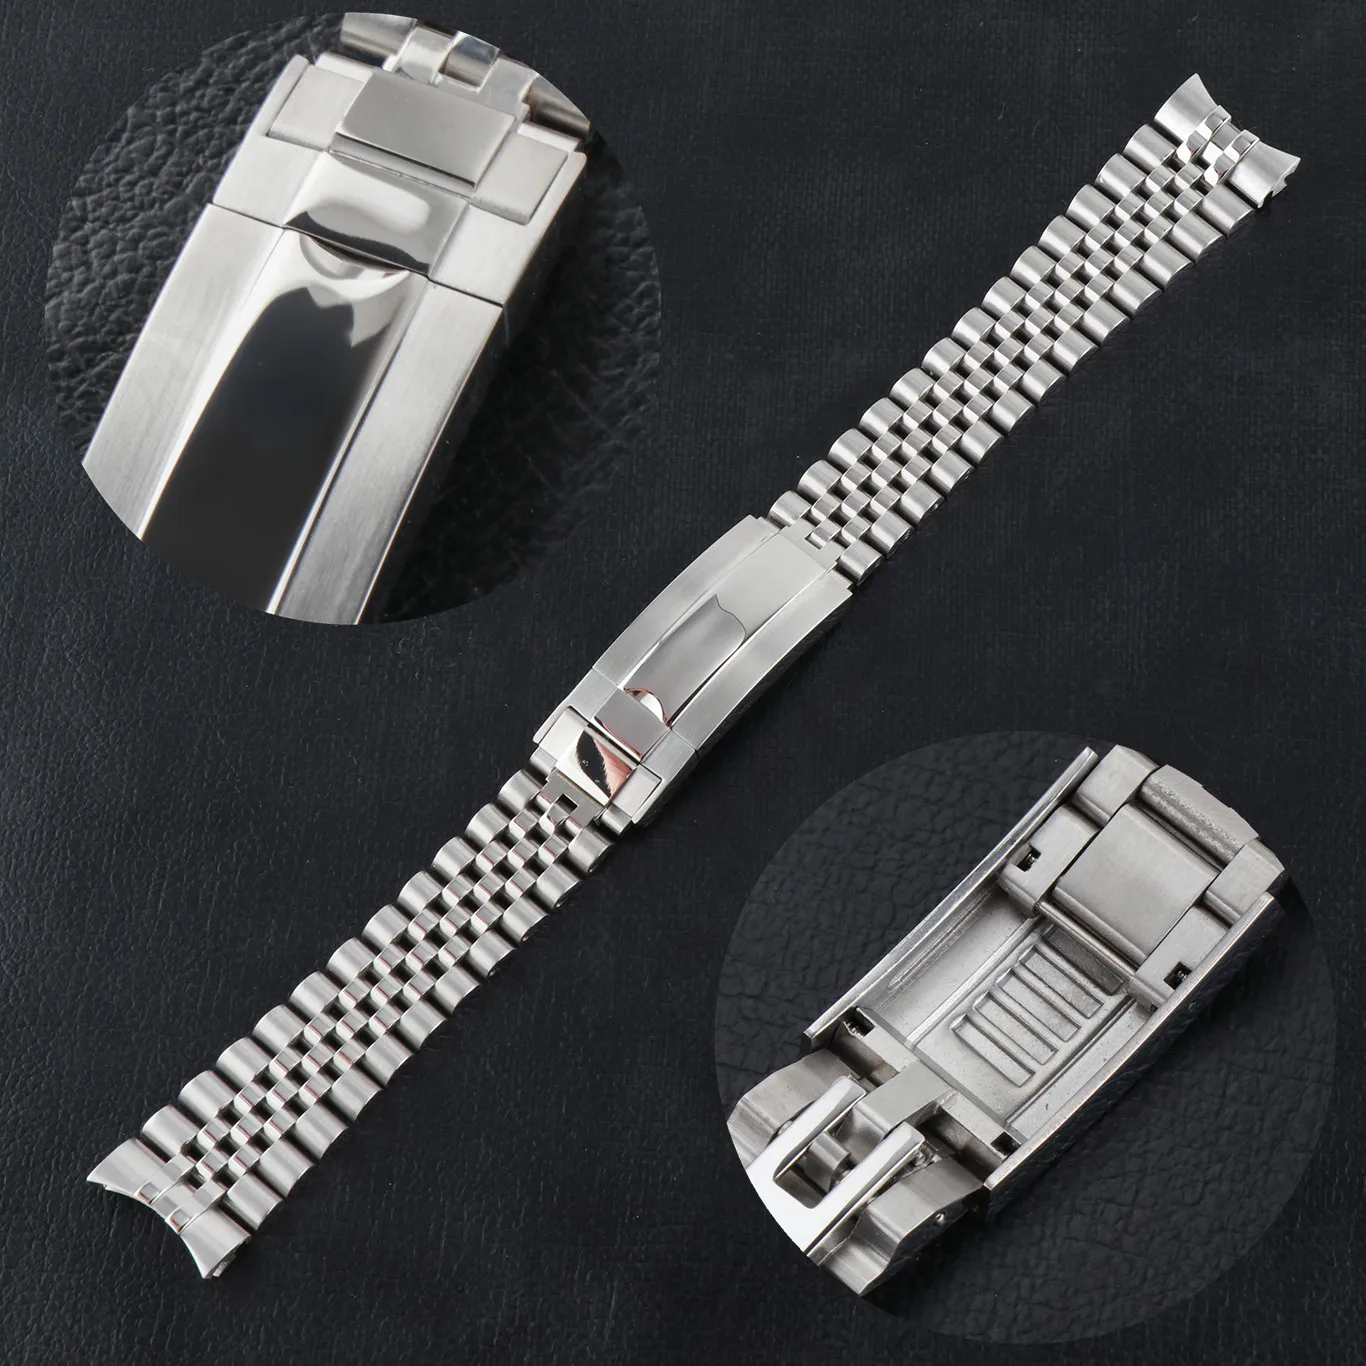 

2021 Jubilee Watchband Strap 2021 Men's 20mm 316L Stainless Steel Bracelet Silver Glide-Lock Buckle for 40mm Sub Watch Case